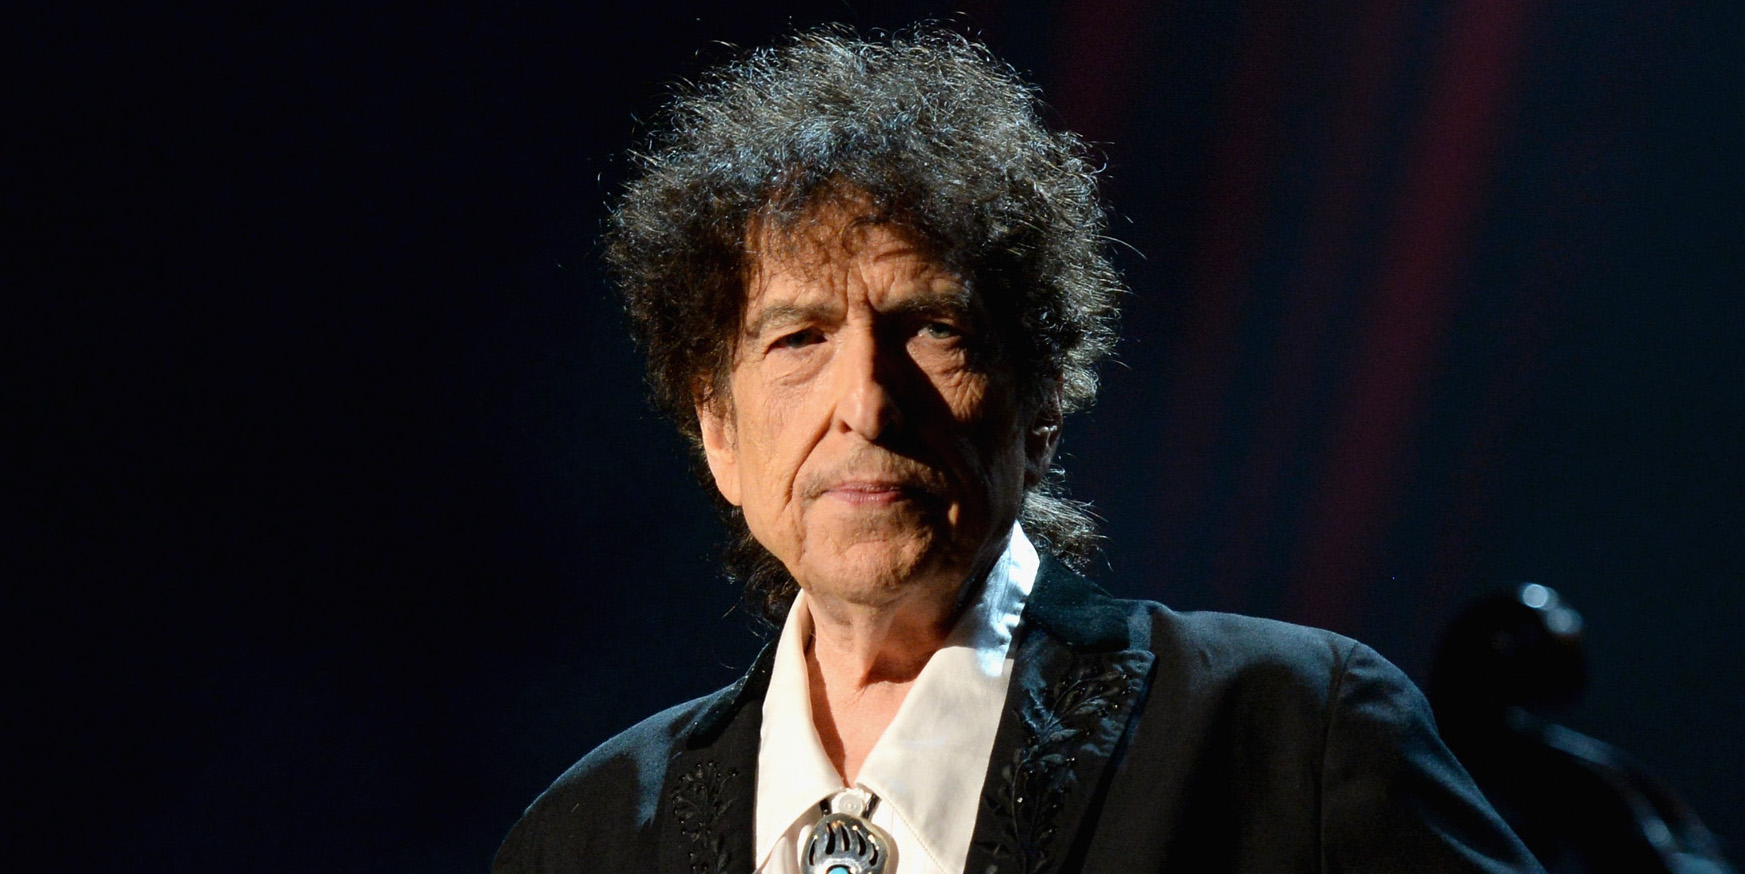 Bob Dylan anuncia la fecha de lanzamiento de su nuevo libro "The